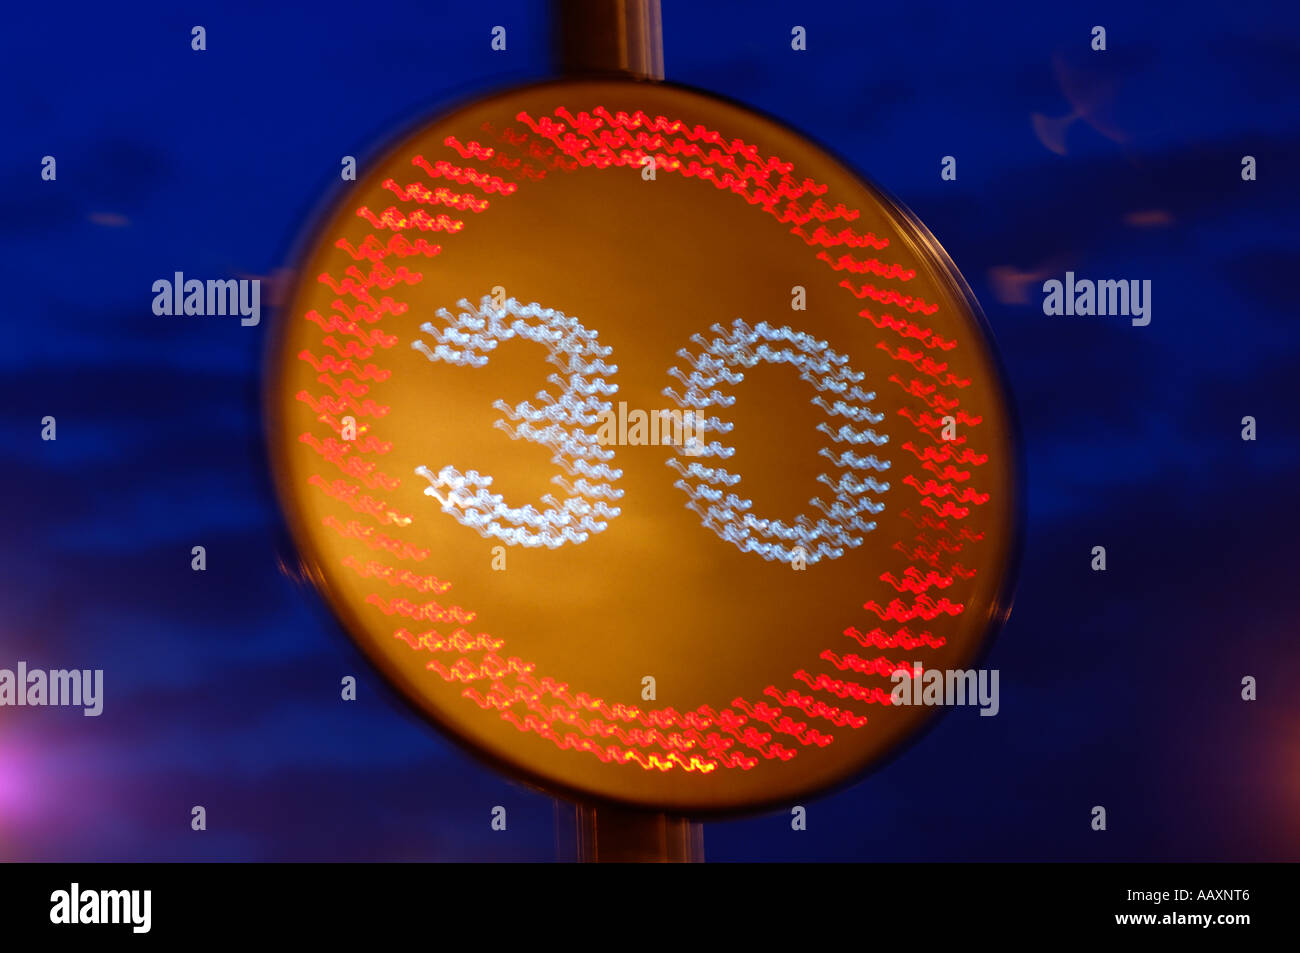 30 Application de la limite de vitesse sign Banque D'Images